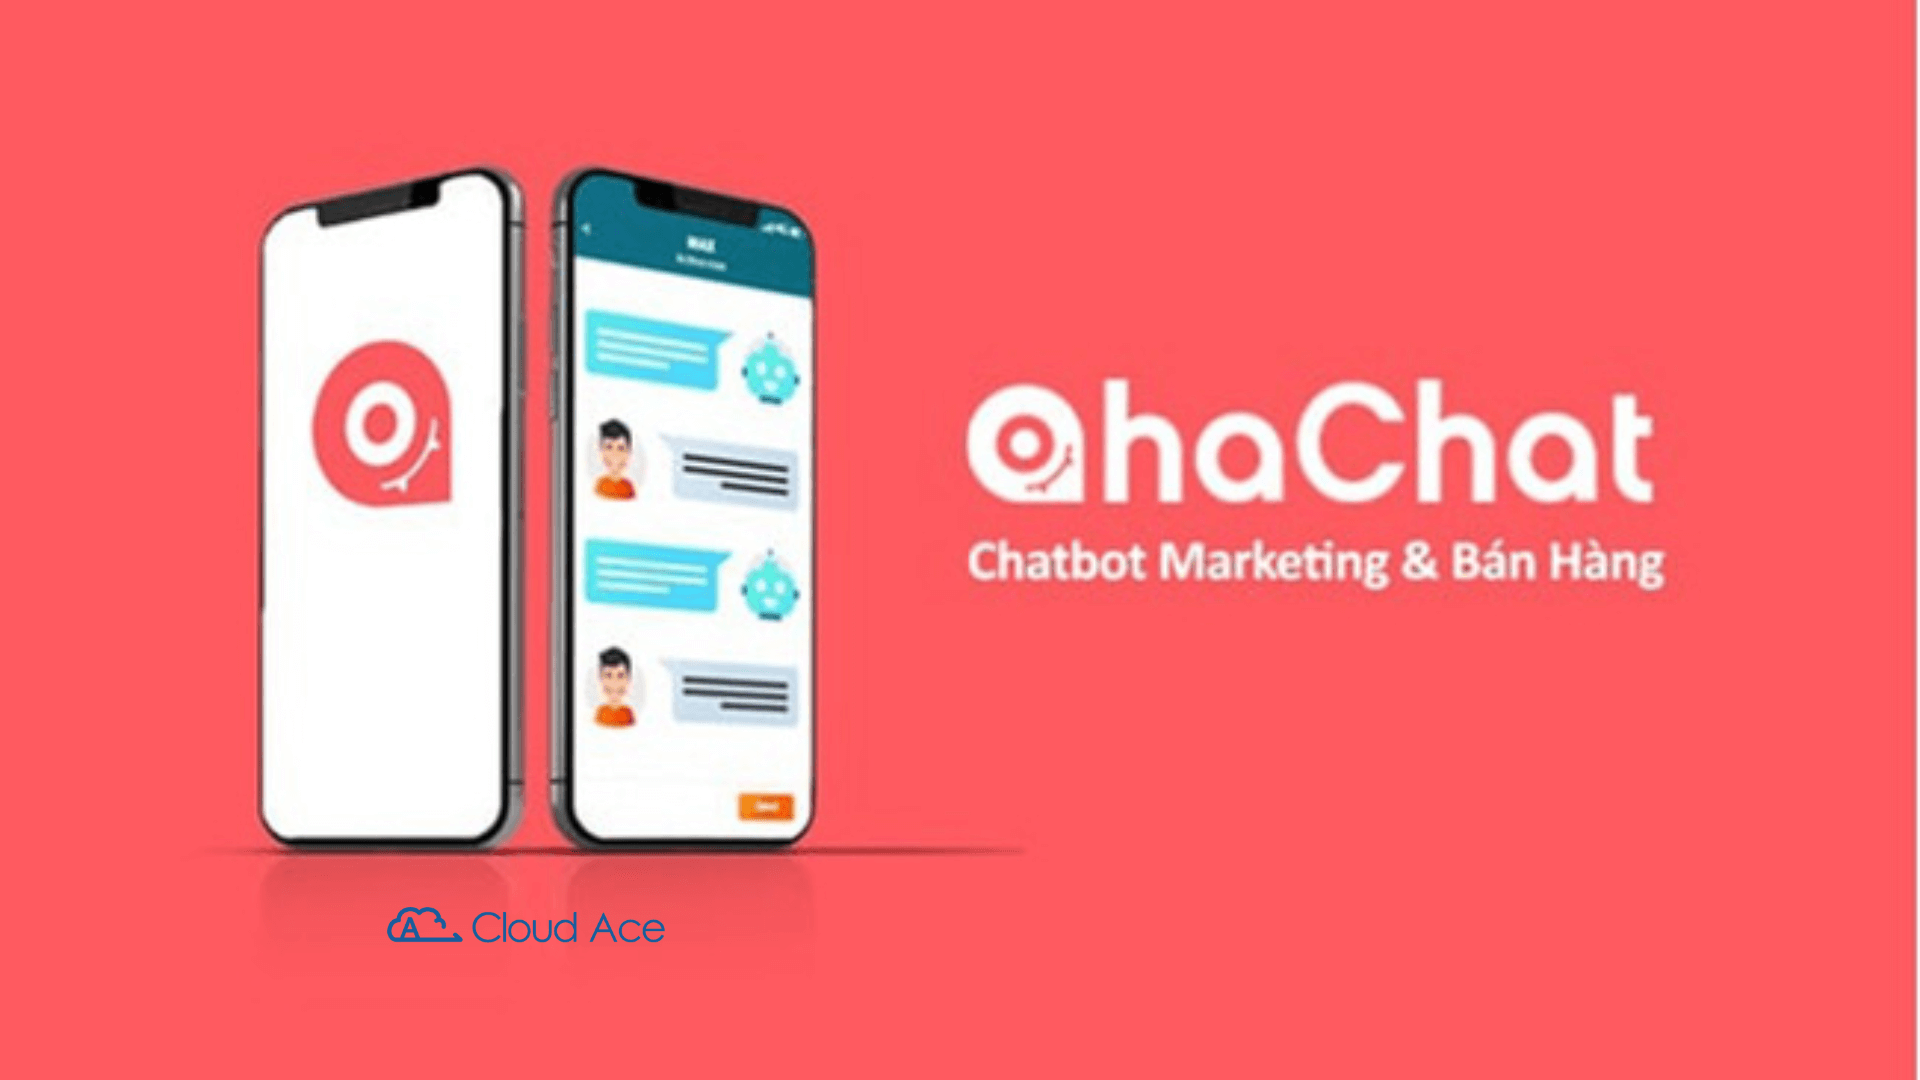 AhaChat Cloud Ace là một công nghệ đột phá với khả năng thay đổi cách các doanh nghiệp tương tác với khách hàng. Với AhaChat Cloud Ace, khách hàng của bạn sẽ thoải mái trò chuyện với tiếng Việt hoàn toàn, không cần lo lắng về việc không hiểu nhau.